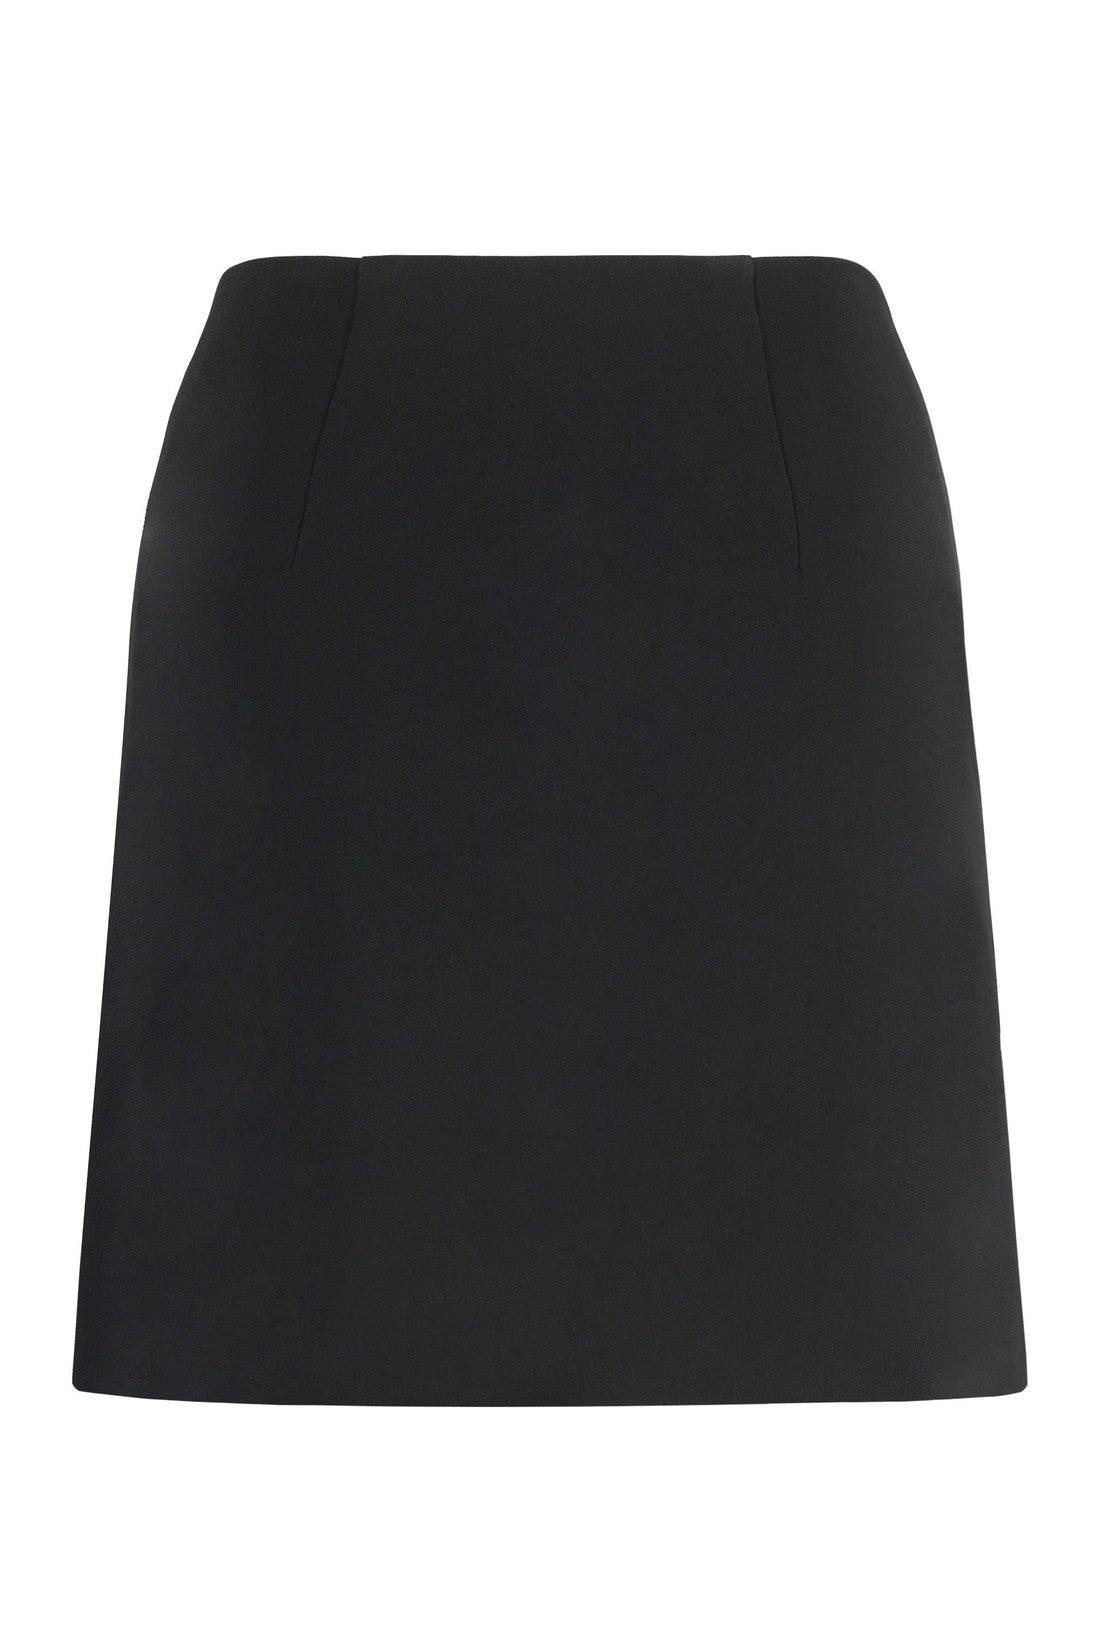 Versace-OUTLET-SALE-Crepe mini skirt-ARCHIVIST